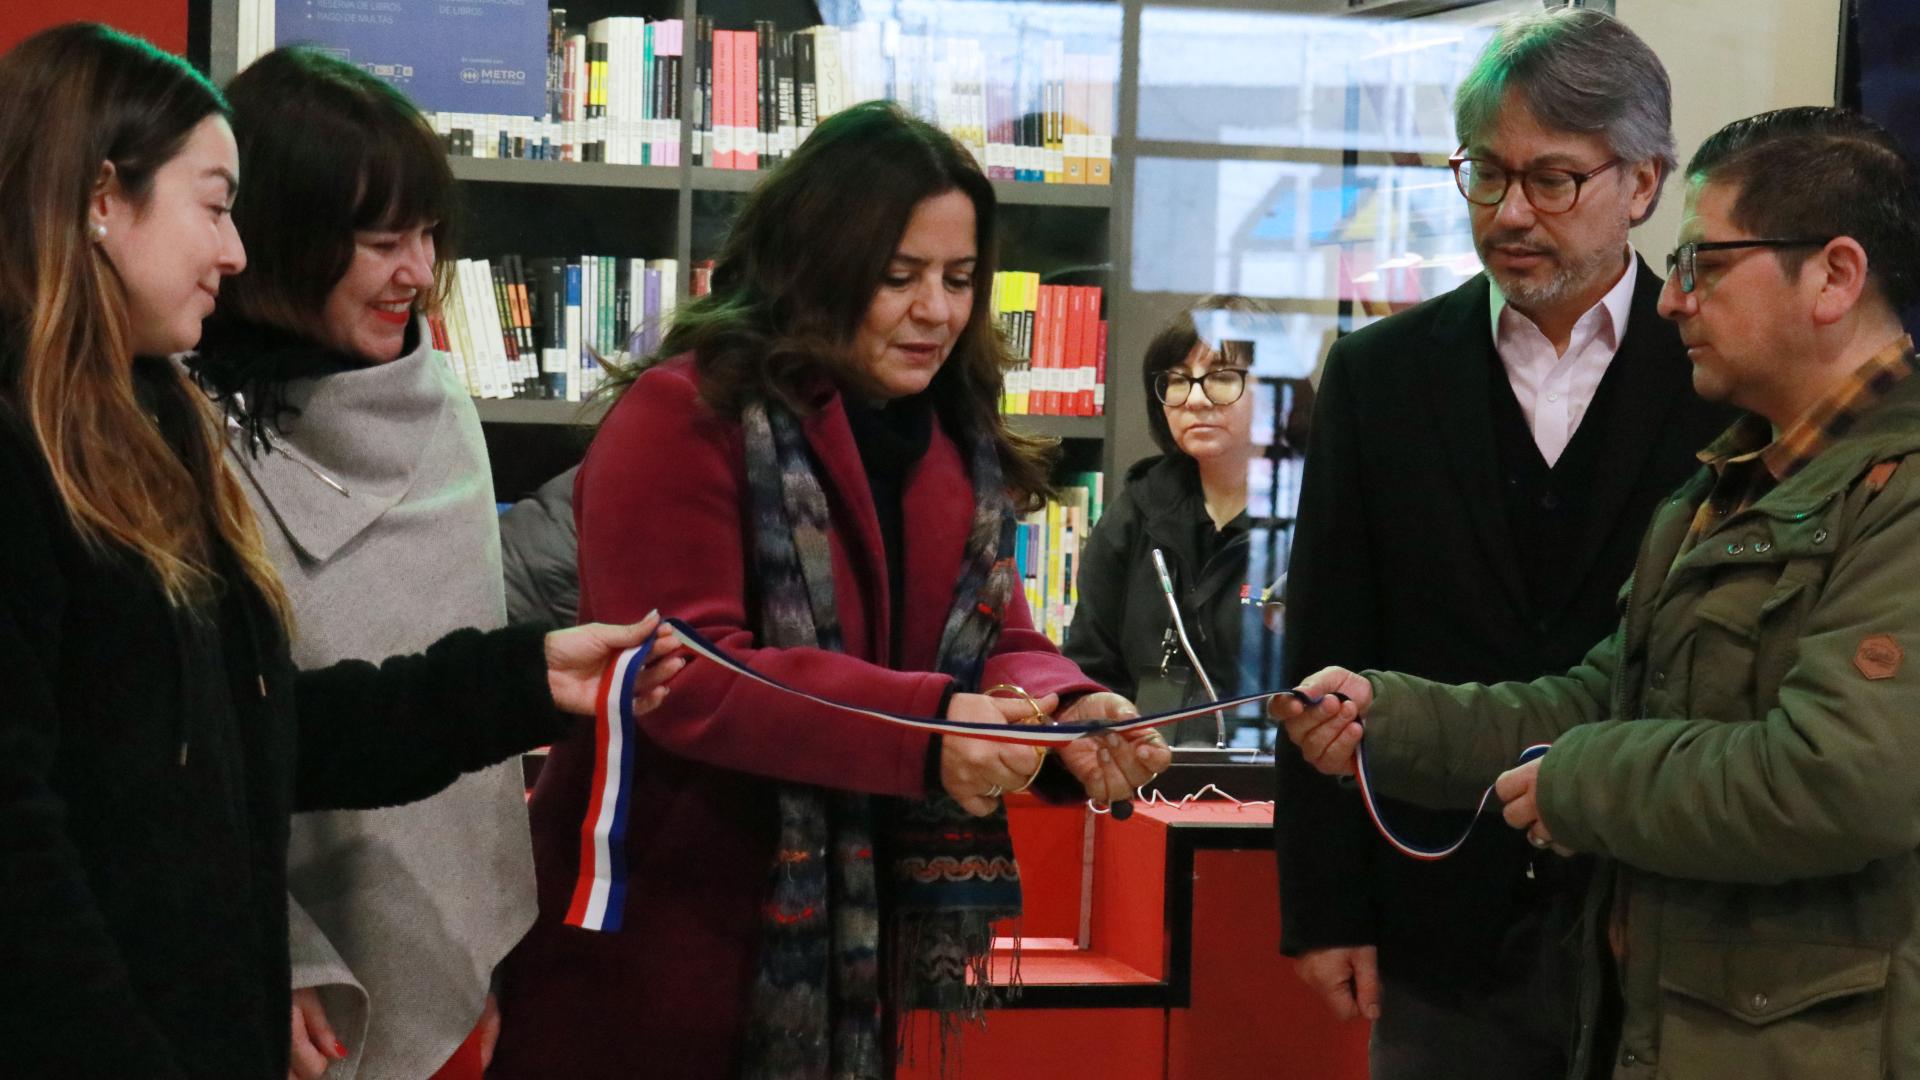 Bibliometro celebra un nuevo aniversario con la reinauguración del módulo de estación Macul